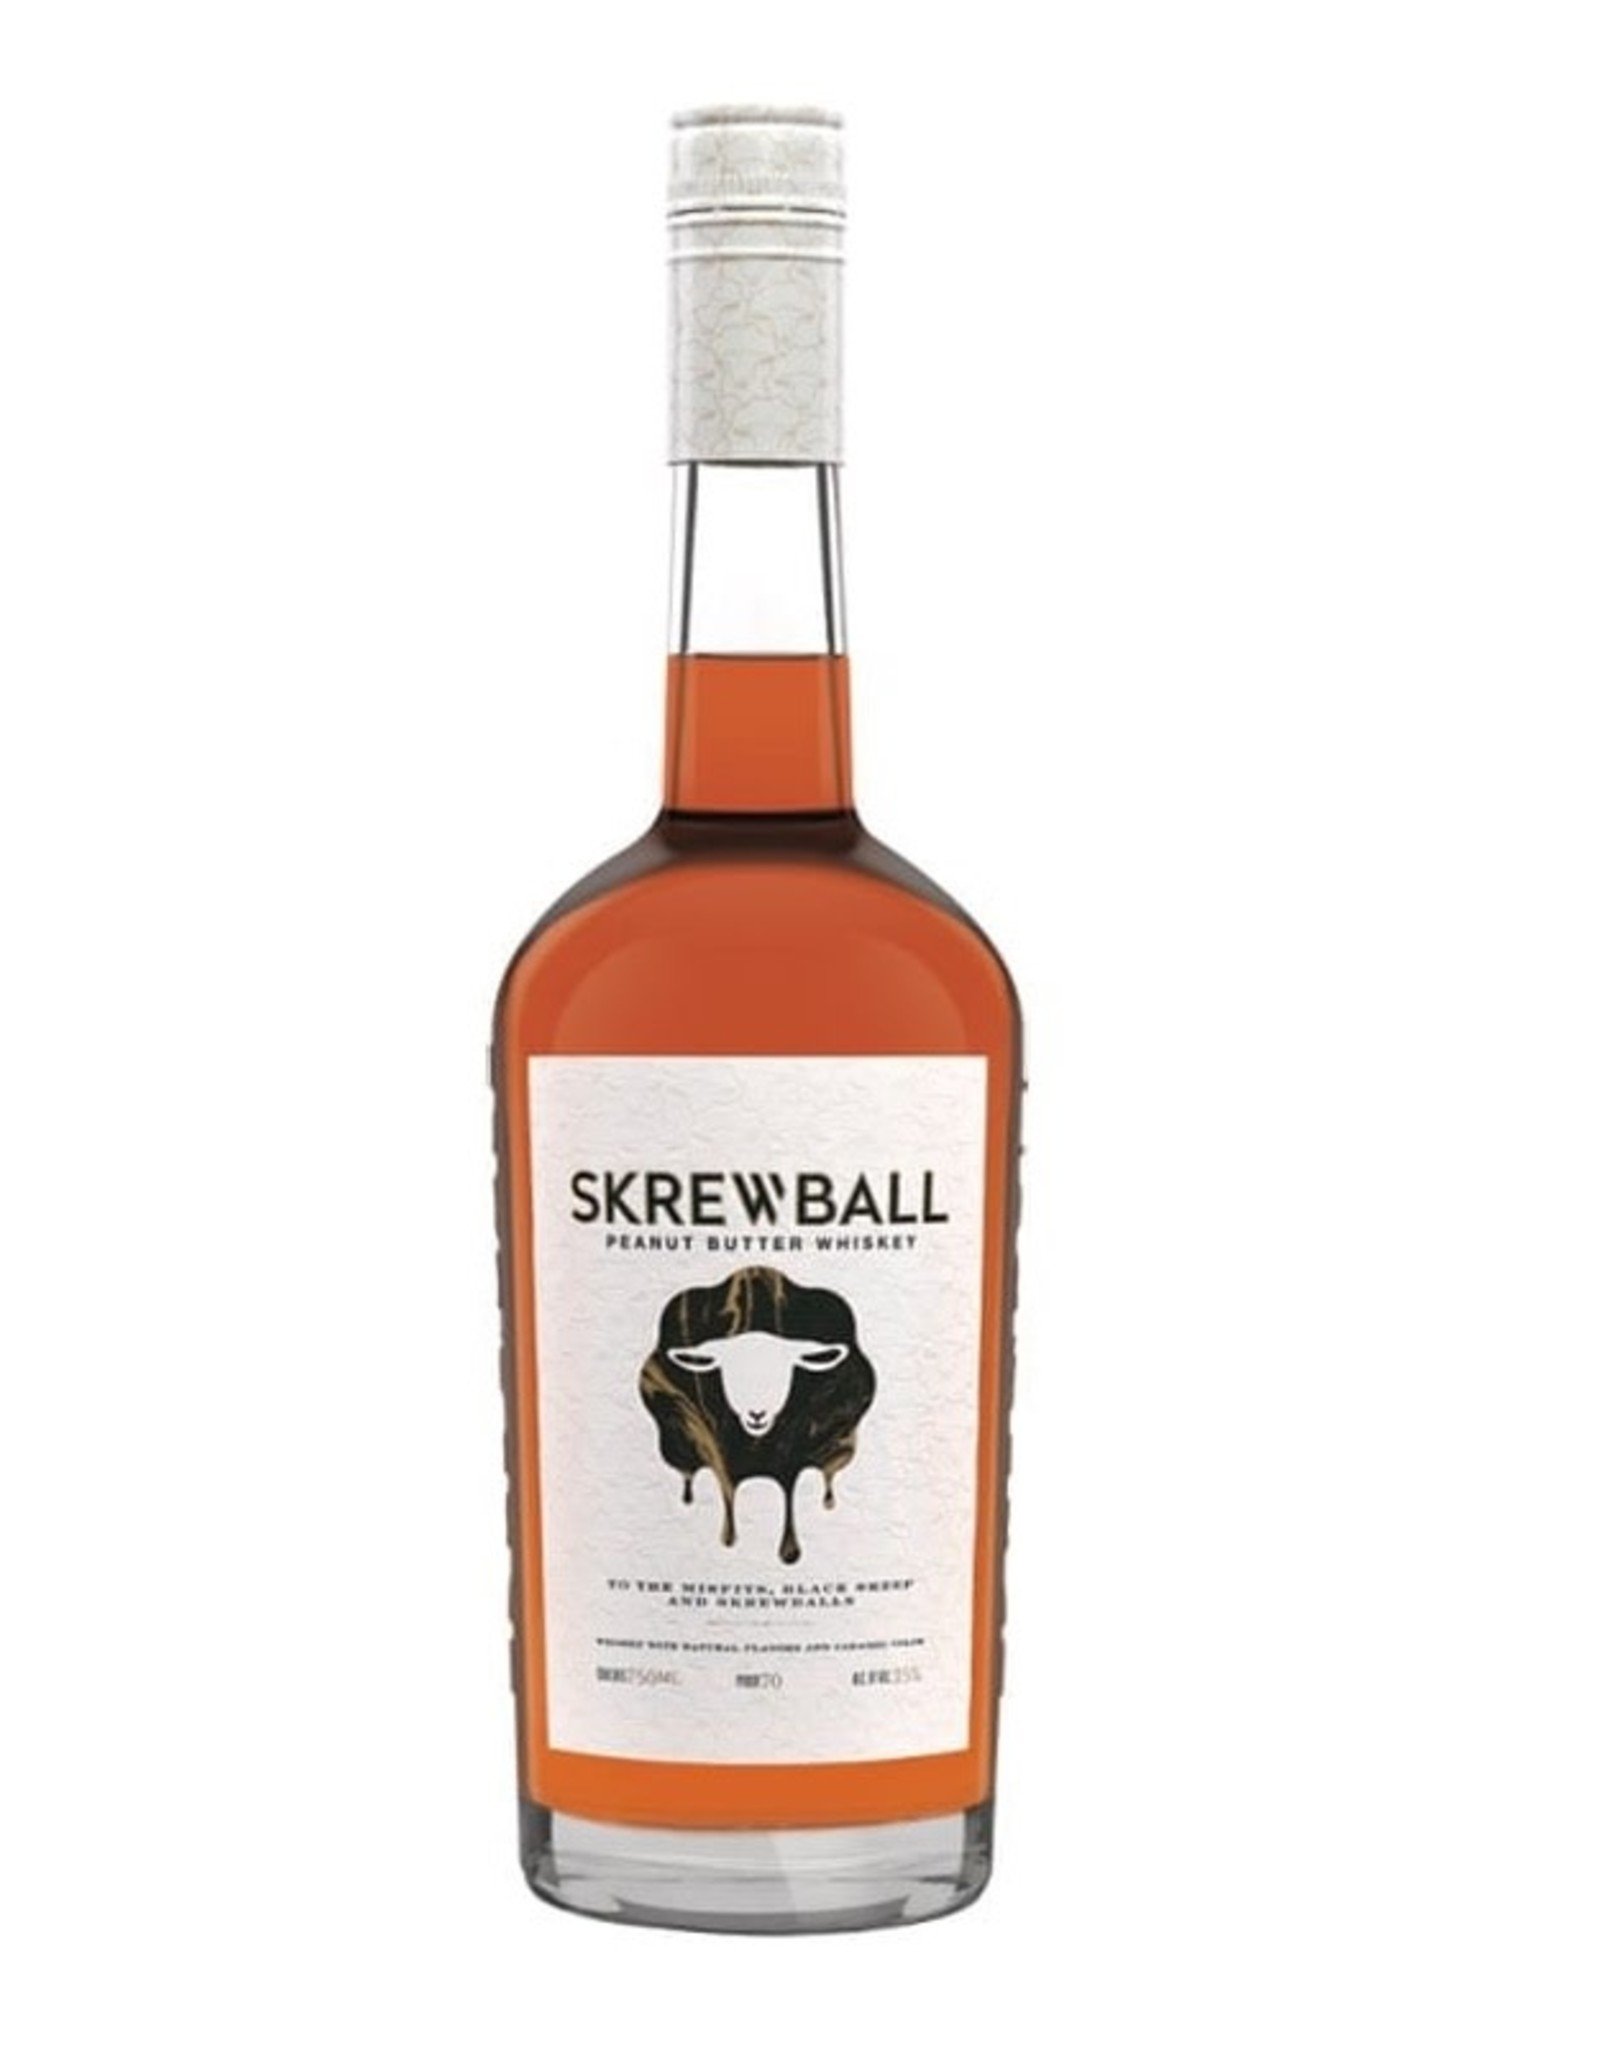 Skrewball SKREWBALL - PEANUT BUTTER - WHISKEY - 70 PR - 375 ML